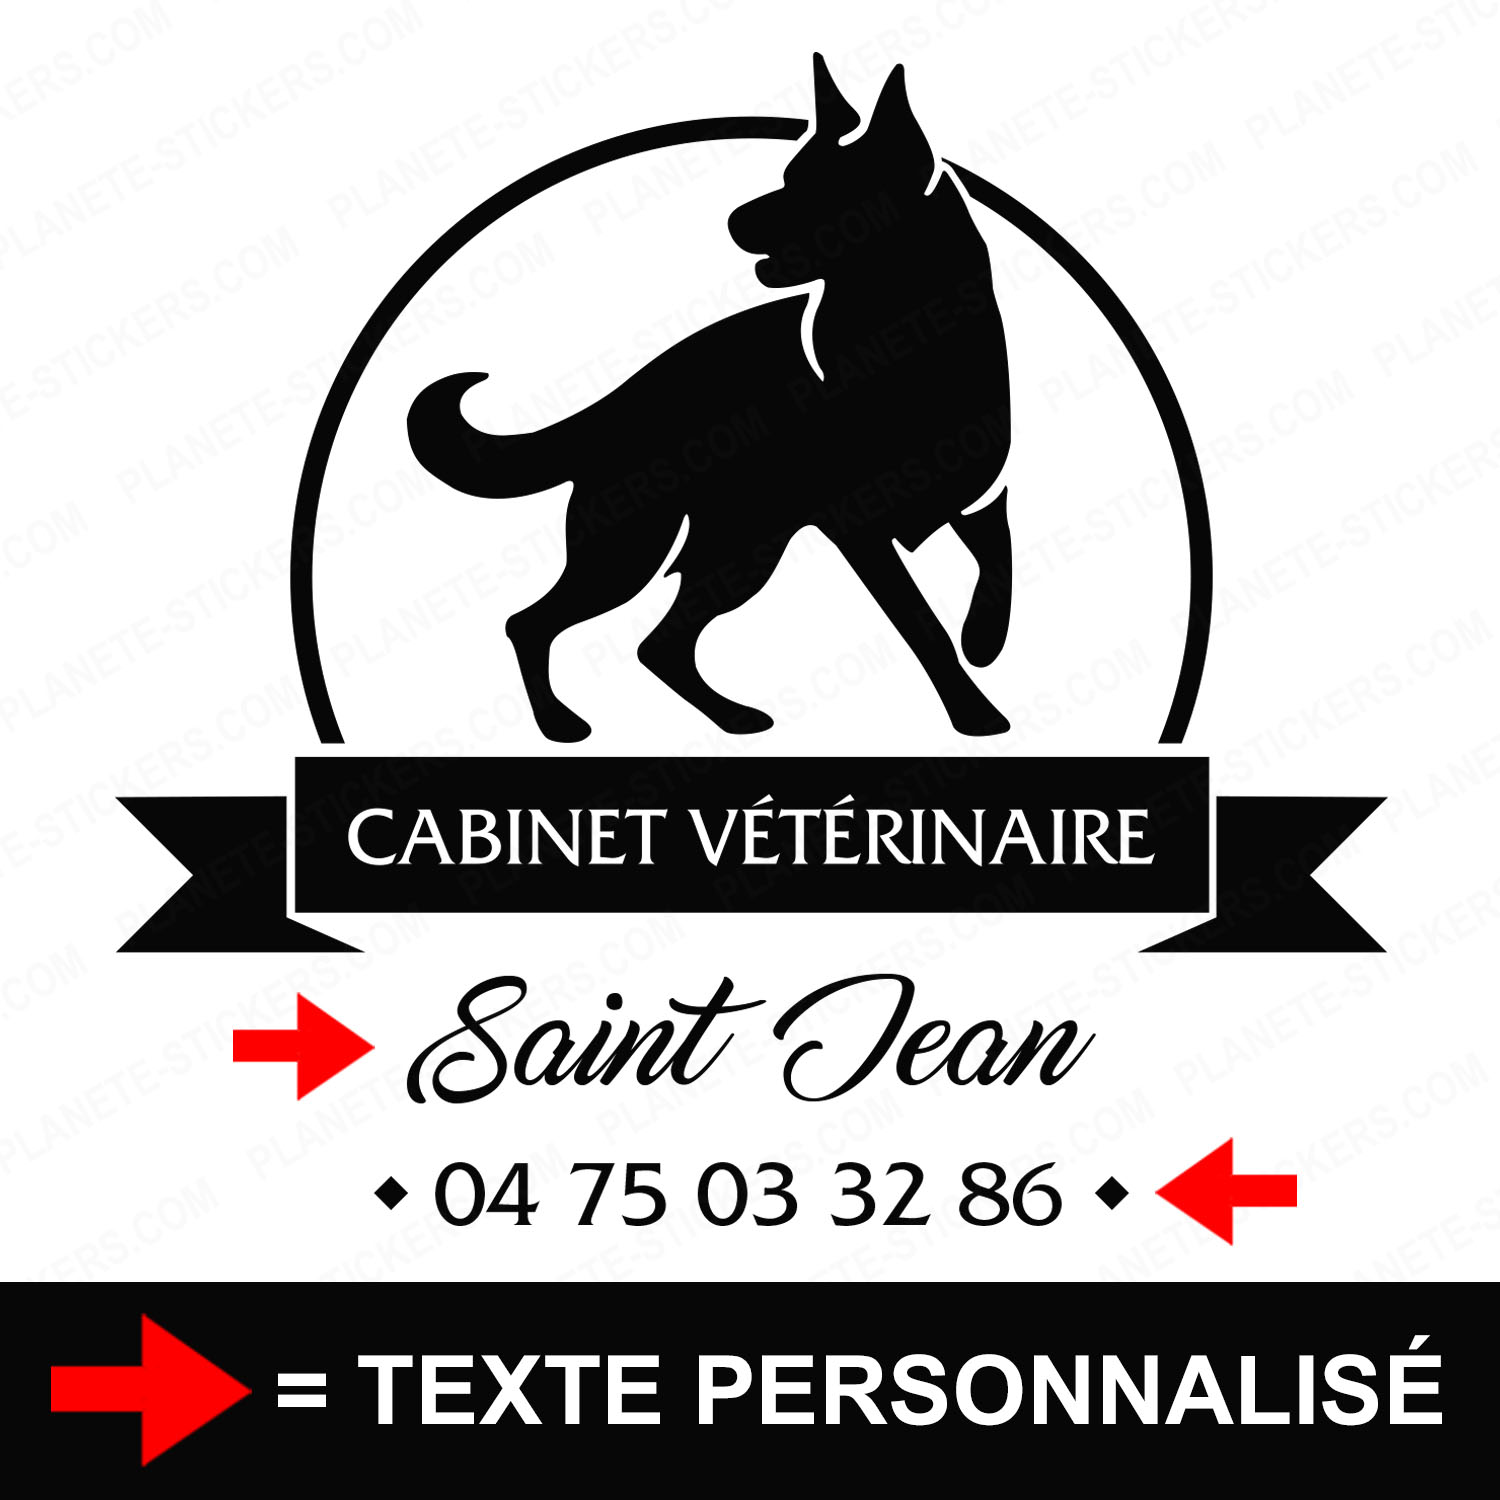 ref4veterinairevitrine-stickers-cabinet-vétérinaire-vitrine-sticker-personnalisé-autocollant-pro-veterinaire-professionnel-2